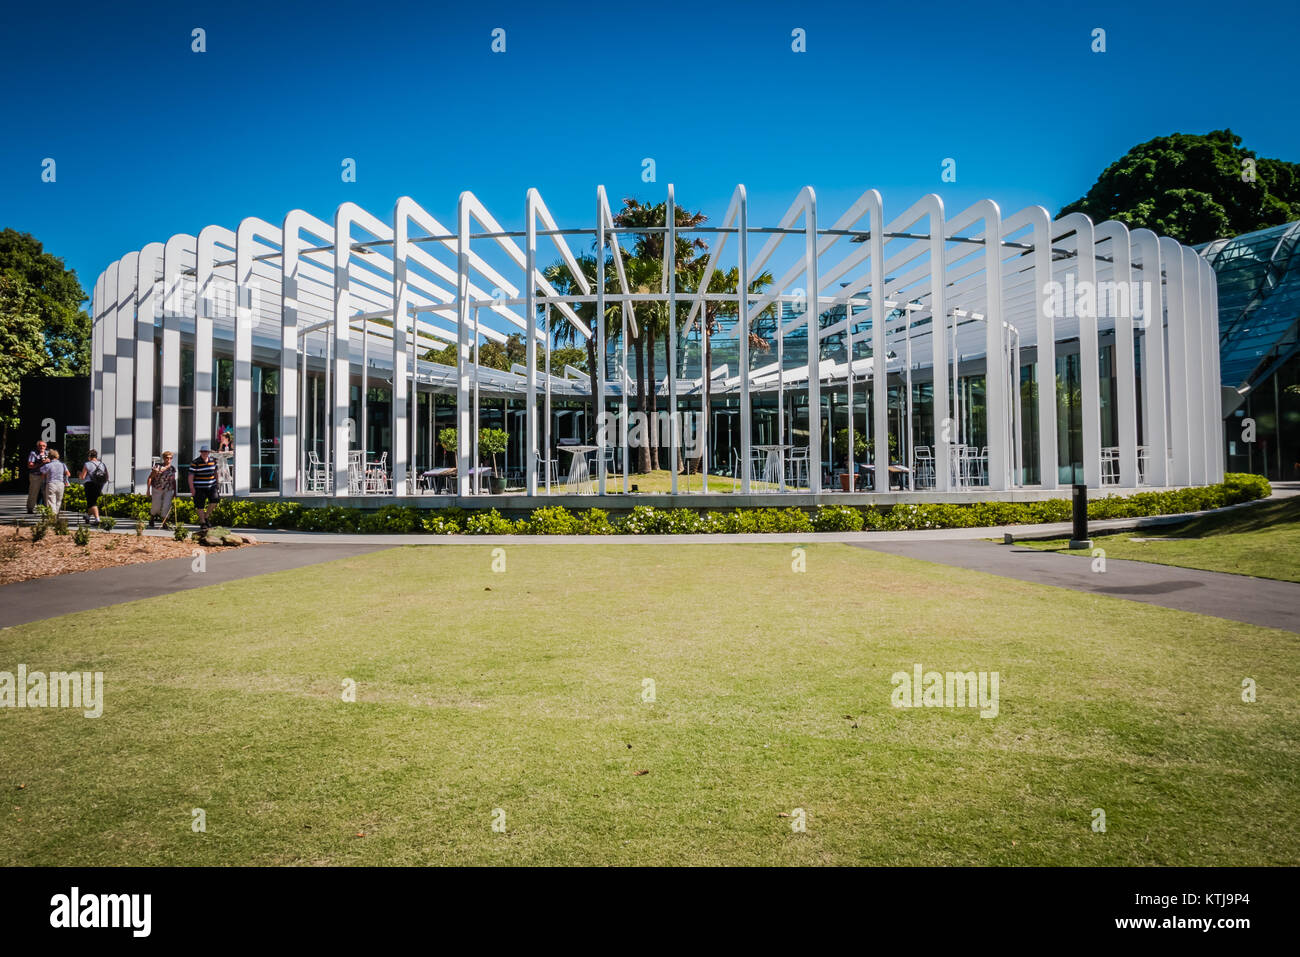 calyx building in sydney royal botanic garden Stock Photo